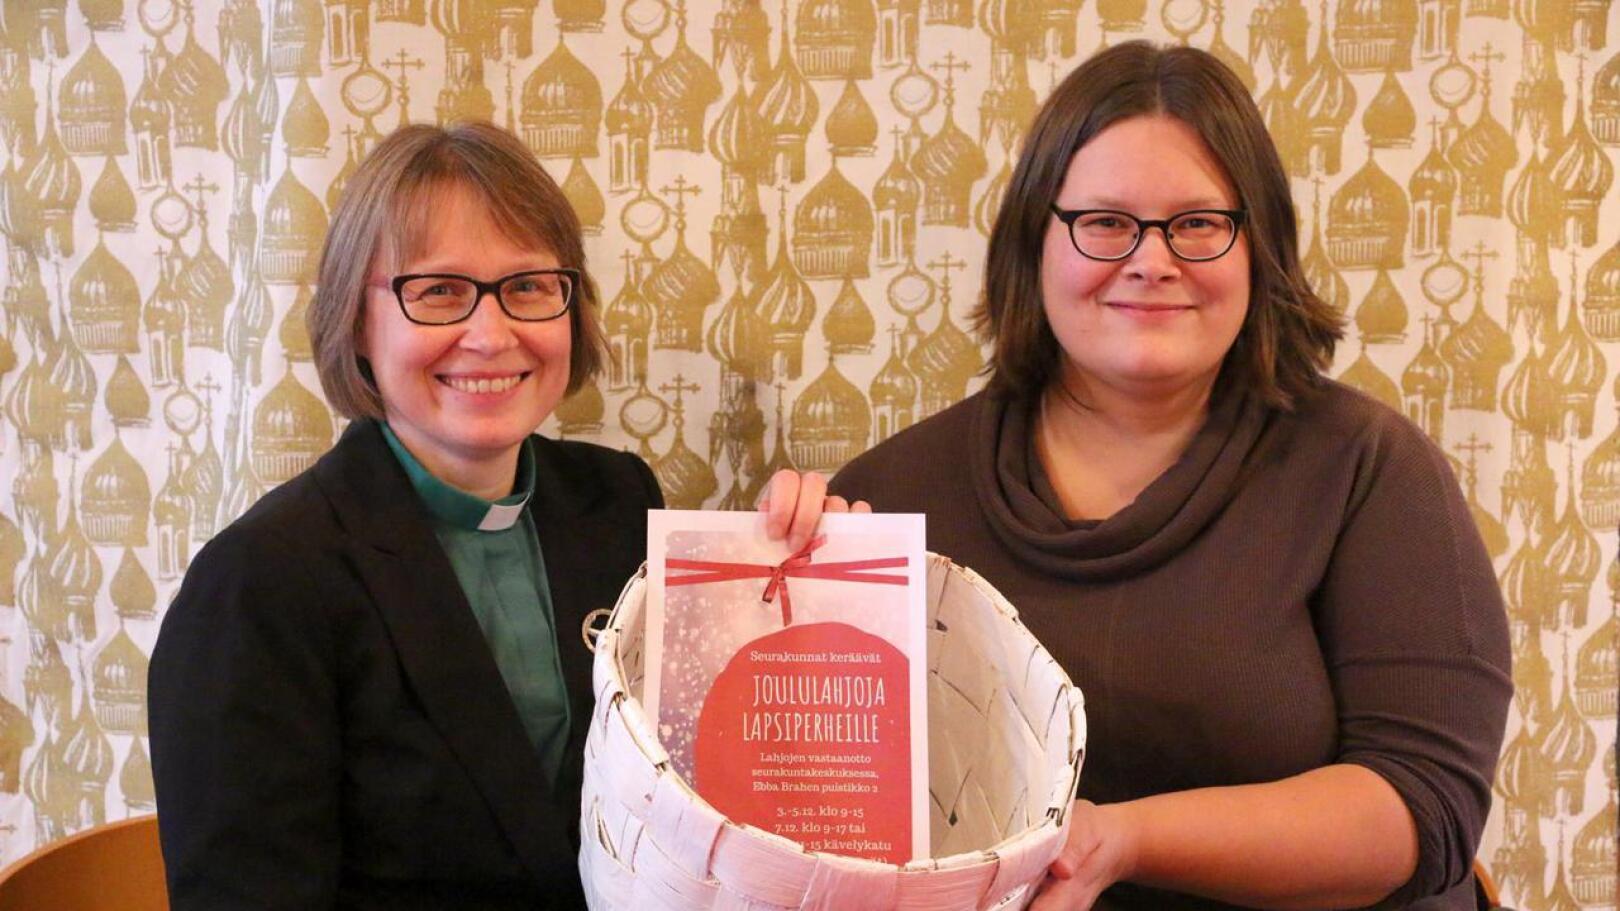 Suomalaisen seurakunnan diakoniatyötä tekevät Kirsi Rundgren ja Sanna Ormiskangas jakavat joulumieltä lapsiperheille Pietarsaaressa. Joululahjakeräys käynnistyy reilun viikon kuluttua.